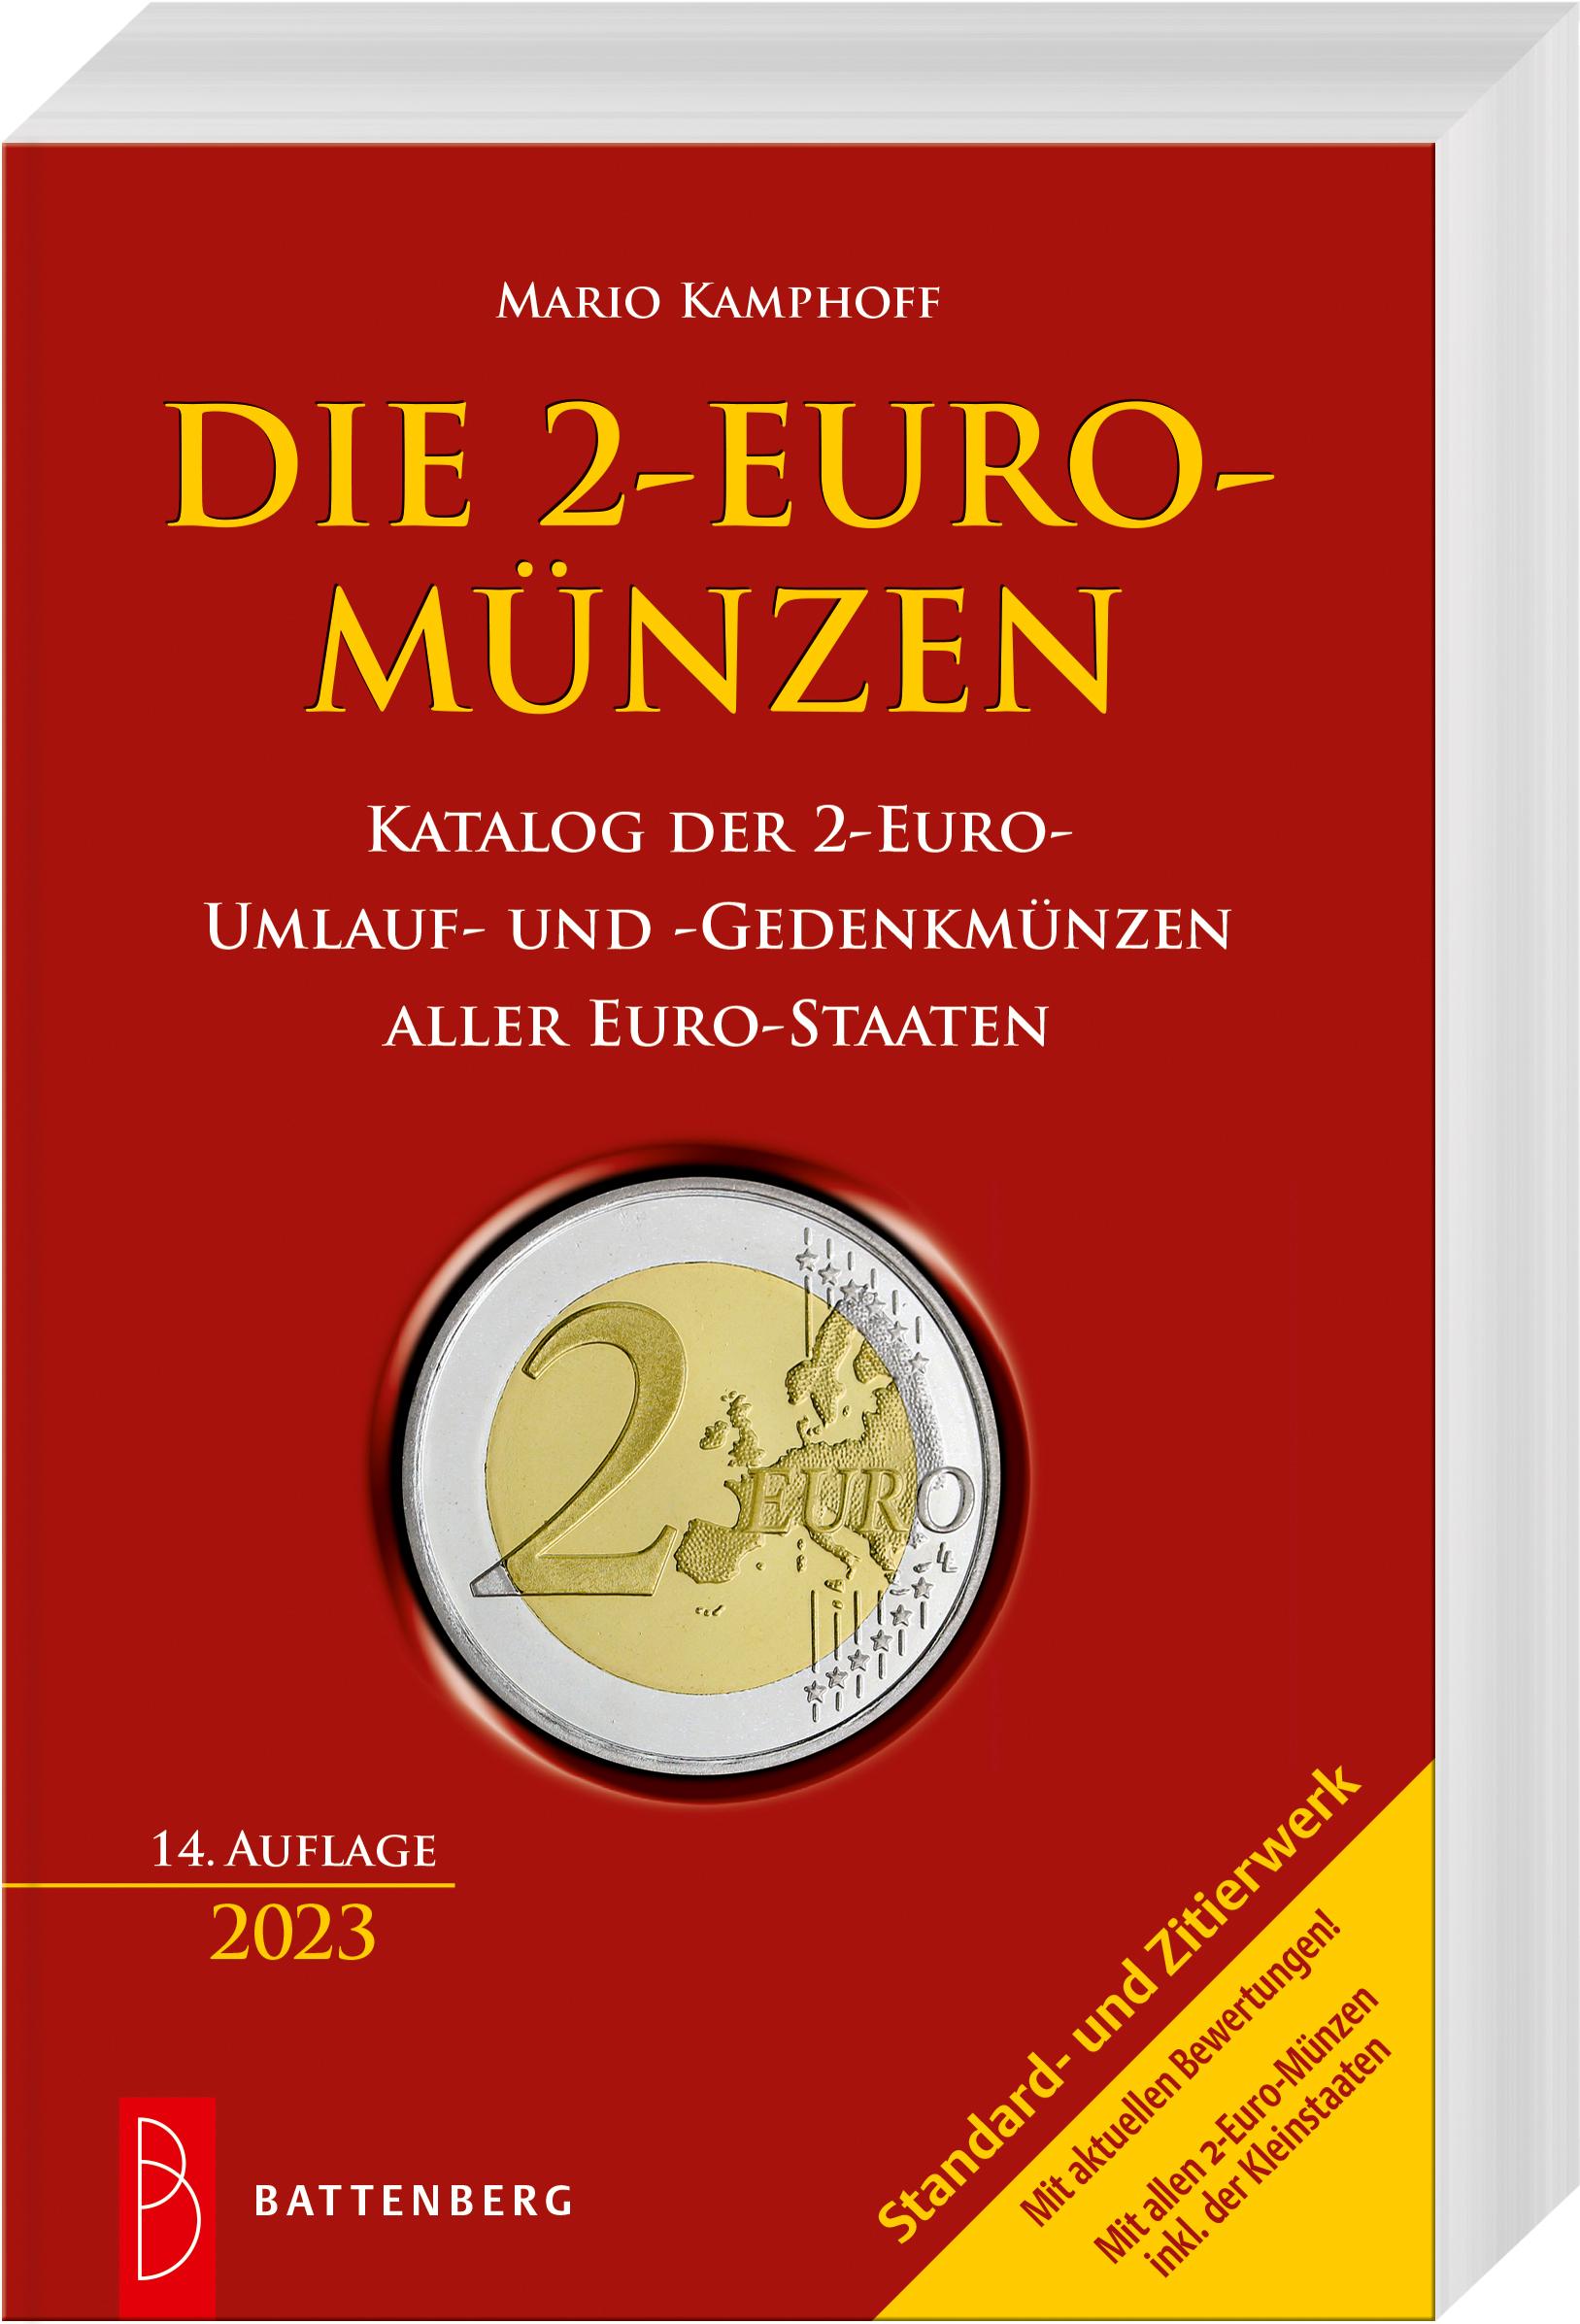 Die 2-Euro-Münzen Katalog der 2-Euro-Umlauf- und -Gedenkmünzen aller Euro-Staaten